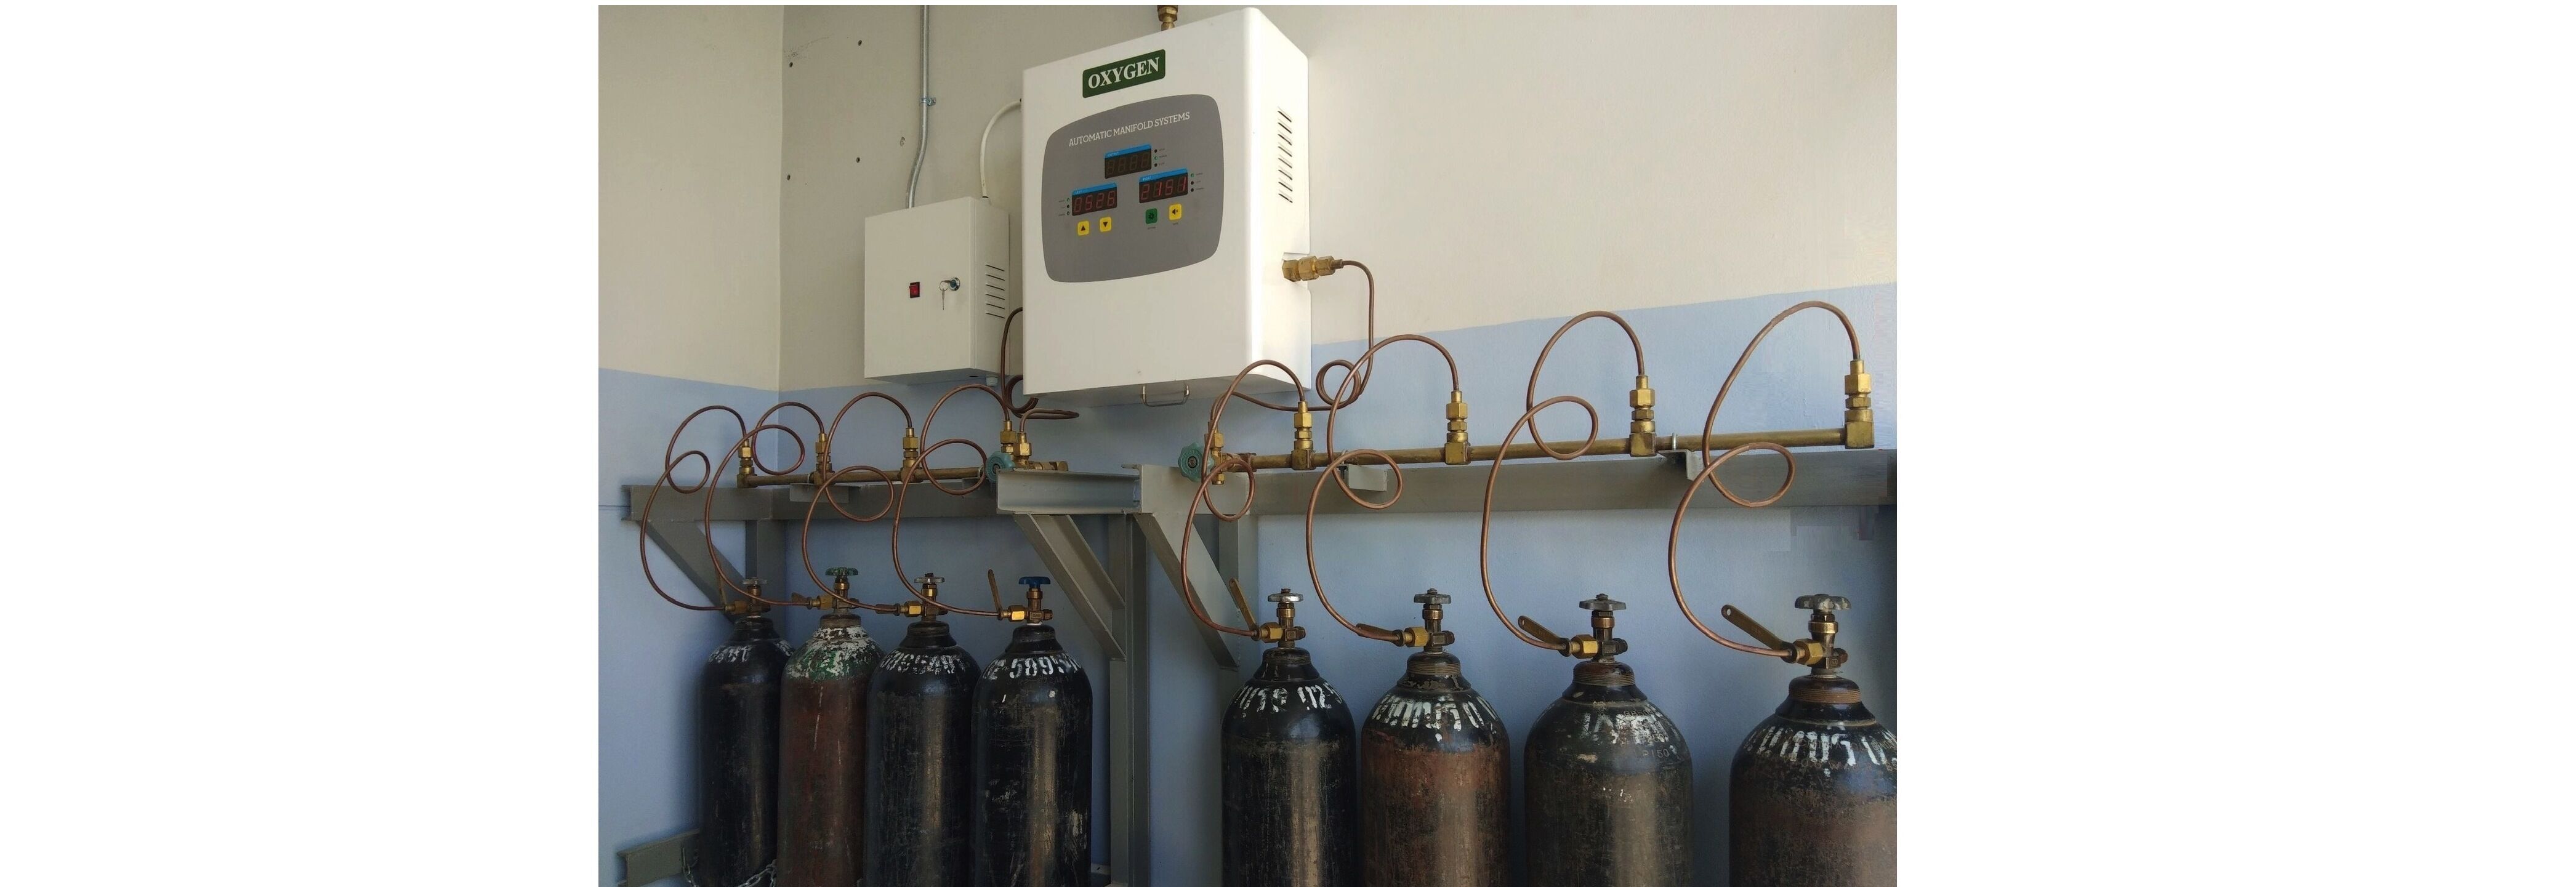 O2 Cylinder Plant Gas System_ชุดสถานีถังออกซิเจนแบบควบคุมการจ่ายอัตโนมัติ